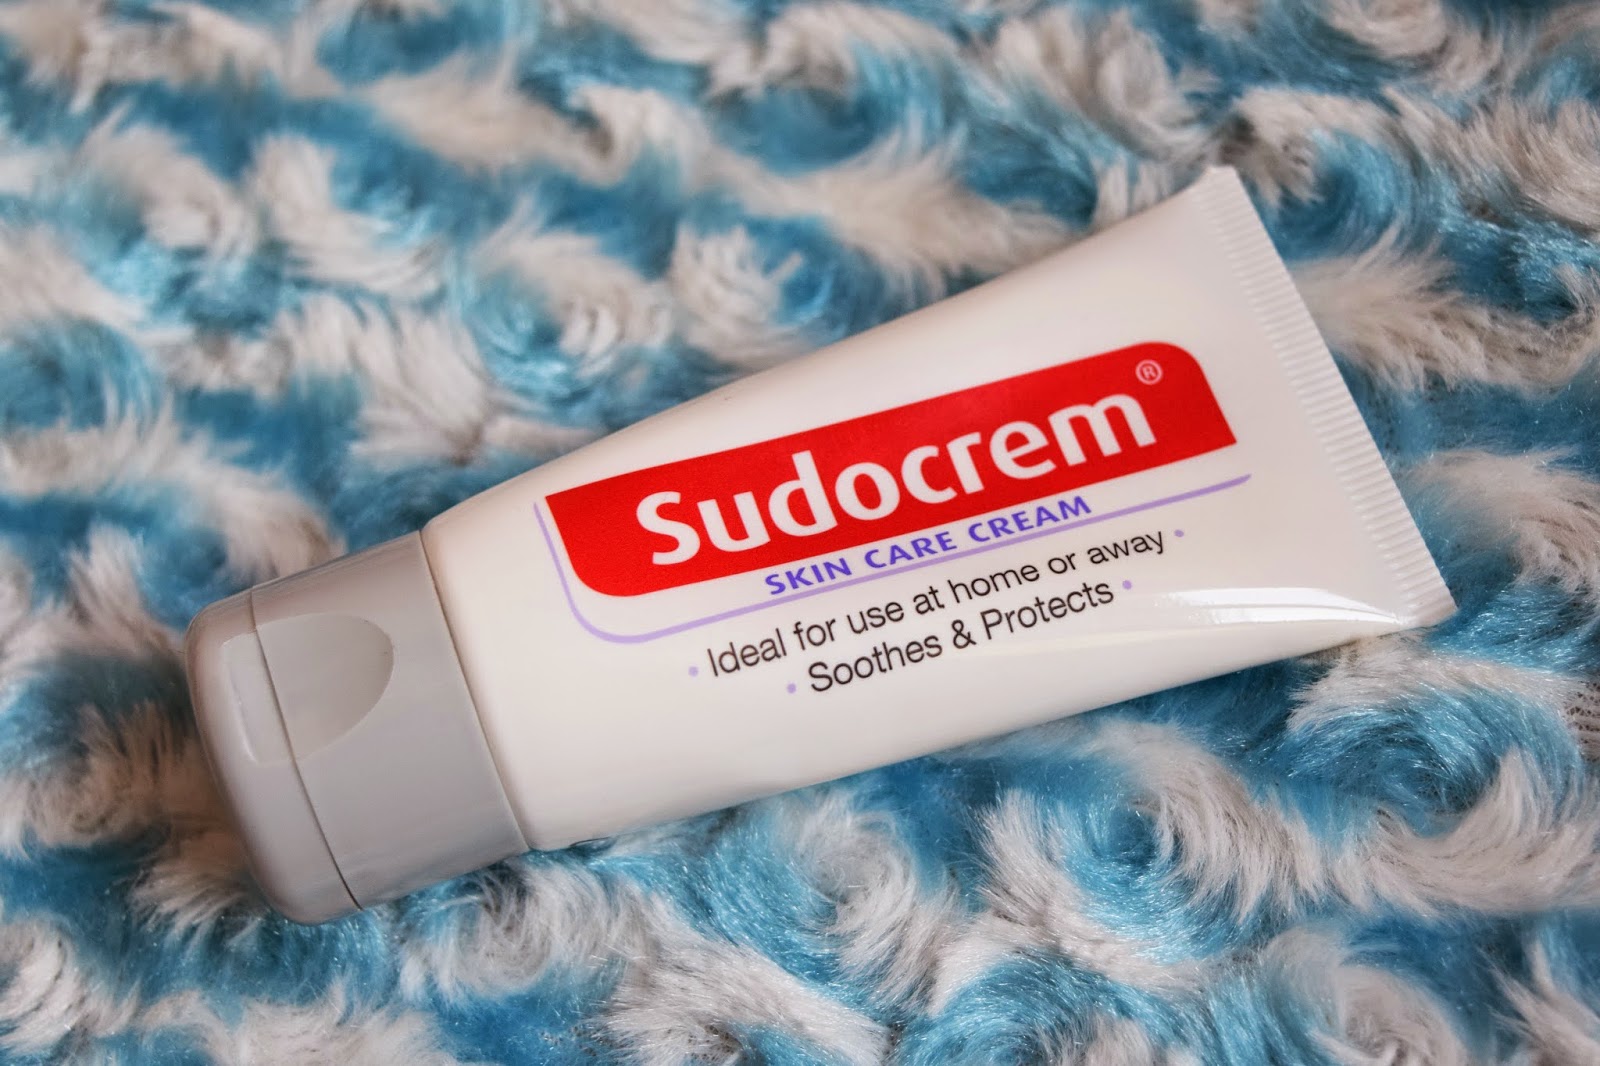 A whole tube of Sudocrem Skin Care Cream